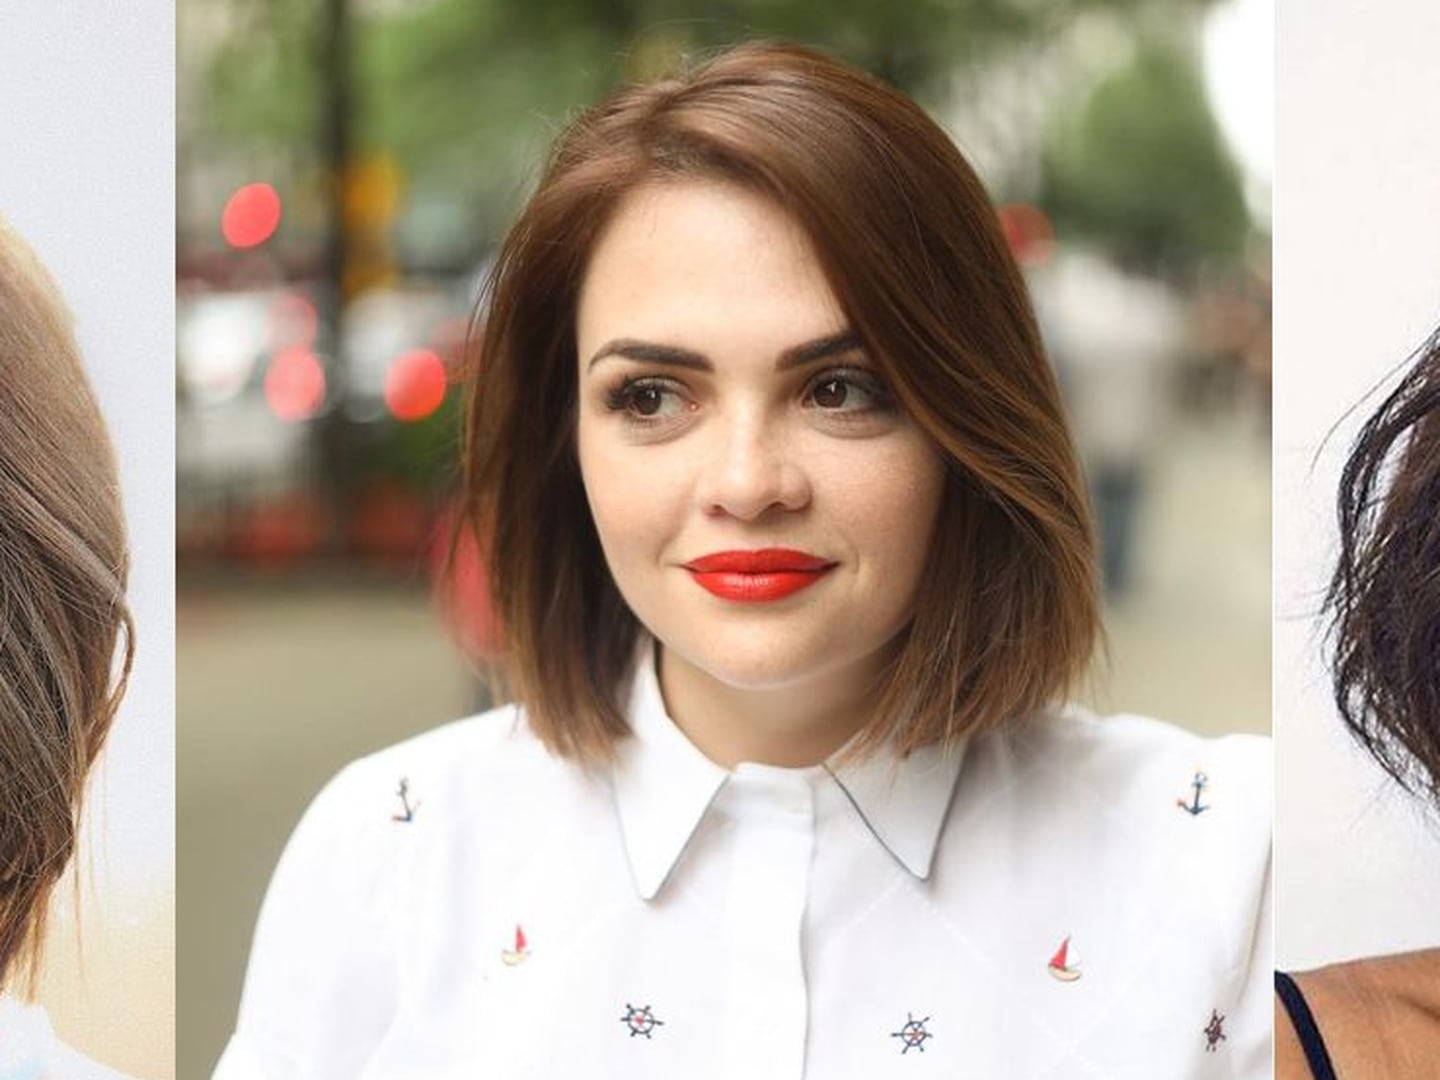 Chanel para rosto redondo: veja como usar o corte de cabelo para um visual  deslumbrante – Nova Mulher